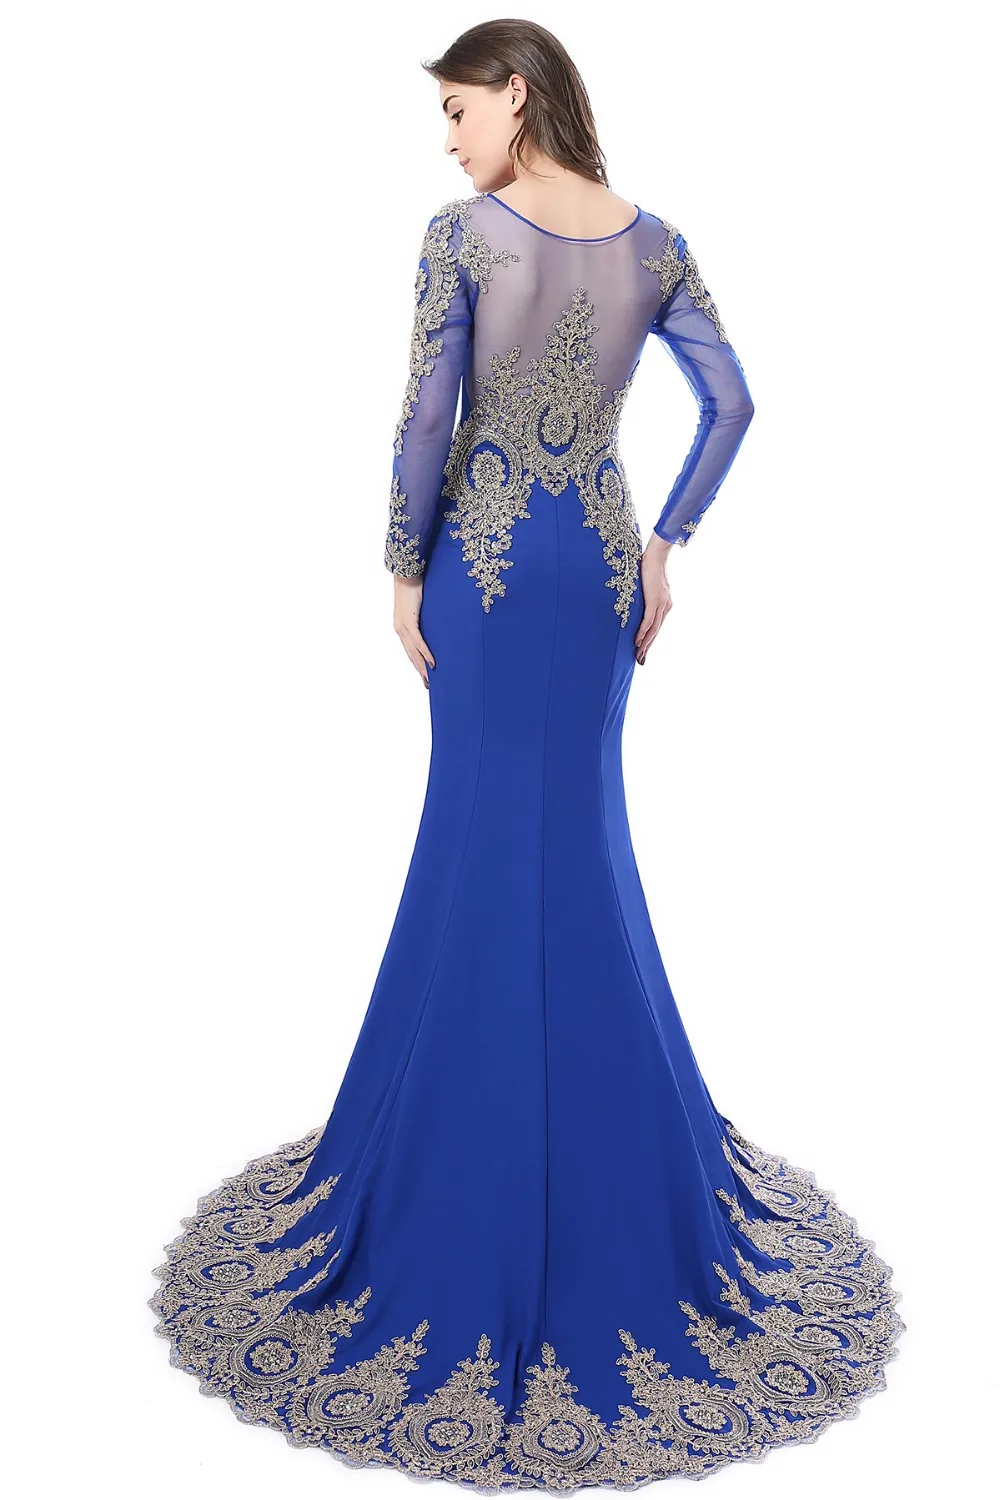 Misshow Русалка вечернее платье Королевский синий длинное торжественное платье Золотое кружевное аппликация с рукавами robe de soiree